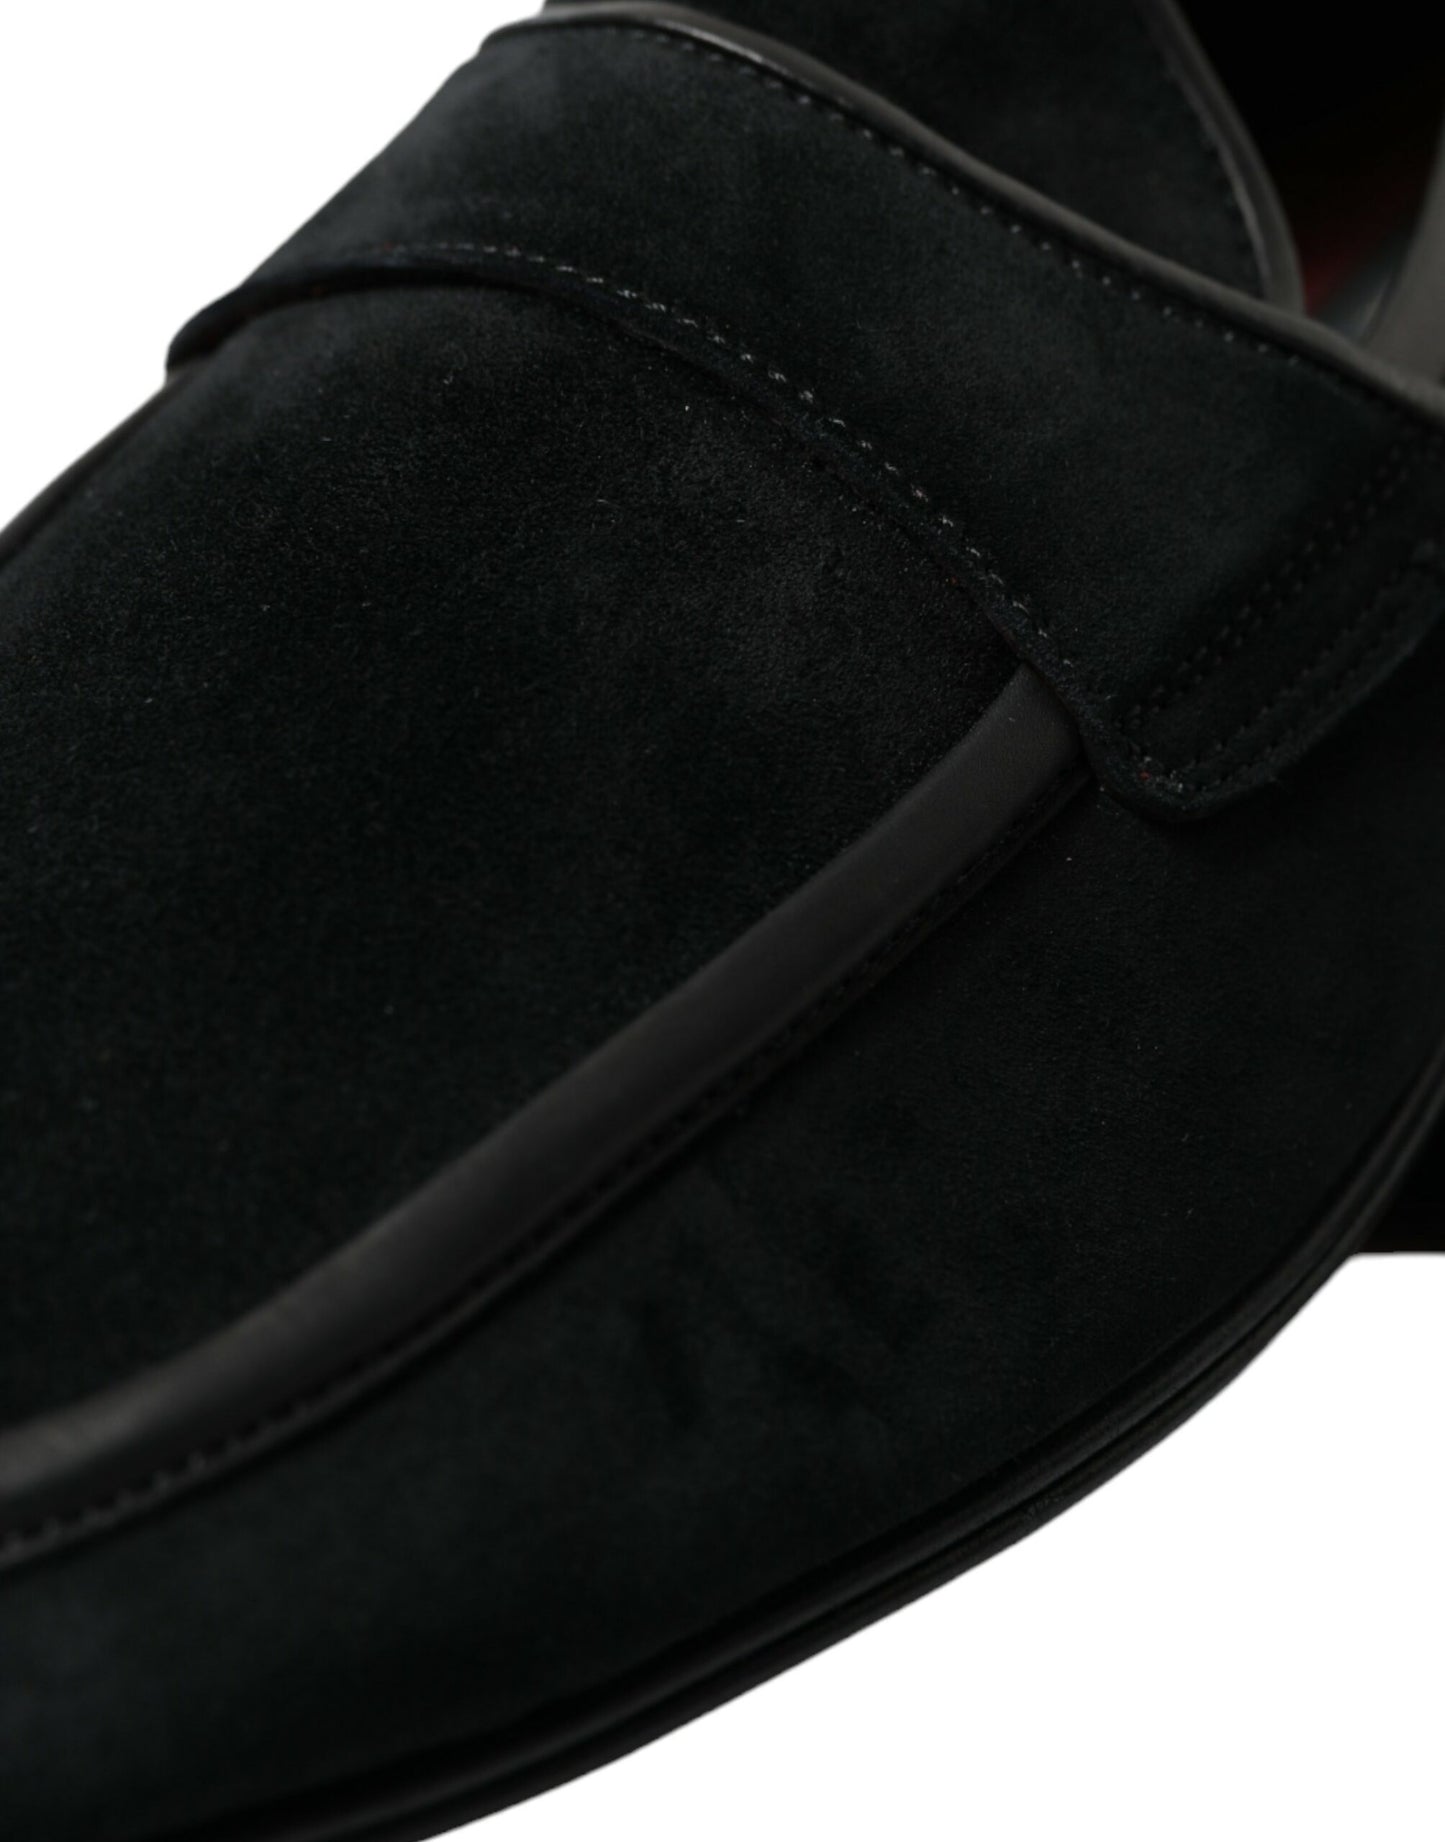 Dolce &amp; Gabbana elegante schwarze Samt-Loafer für Herren